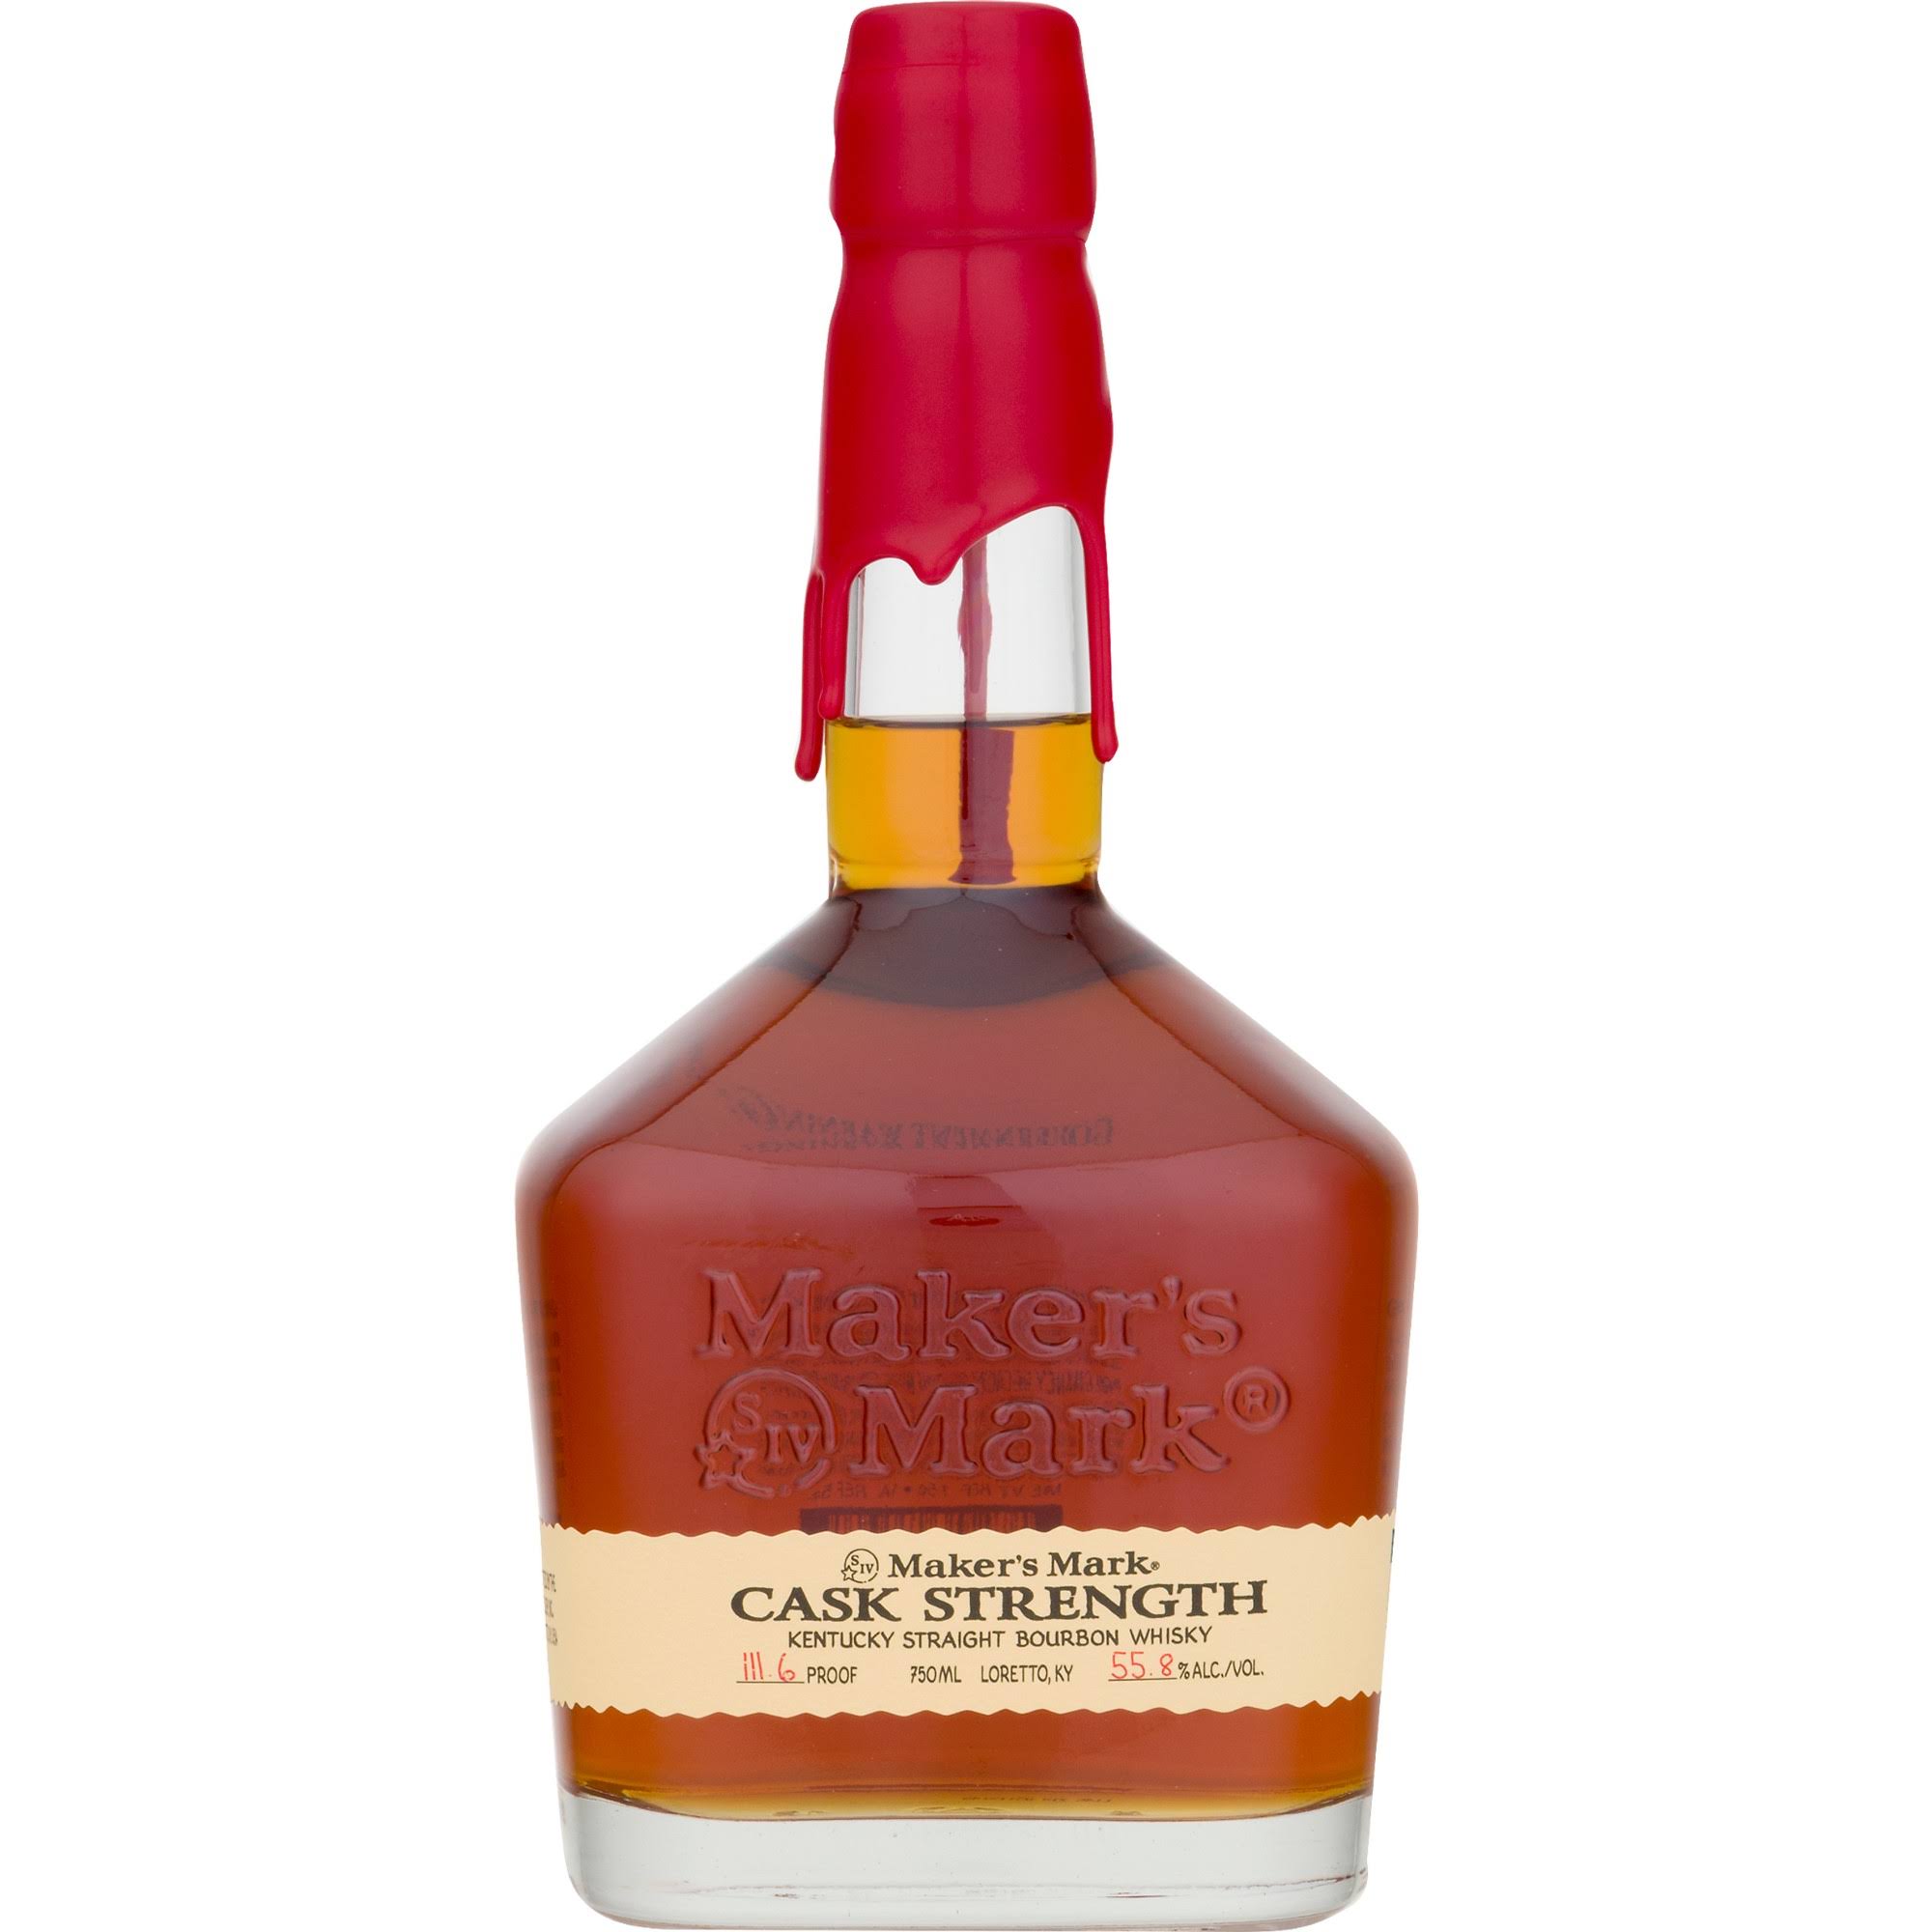 Maker's Mark Whisky, Kentucky Straight Bourbon, Cask Strength - 750 ml